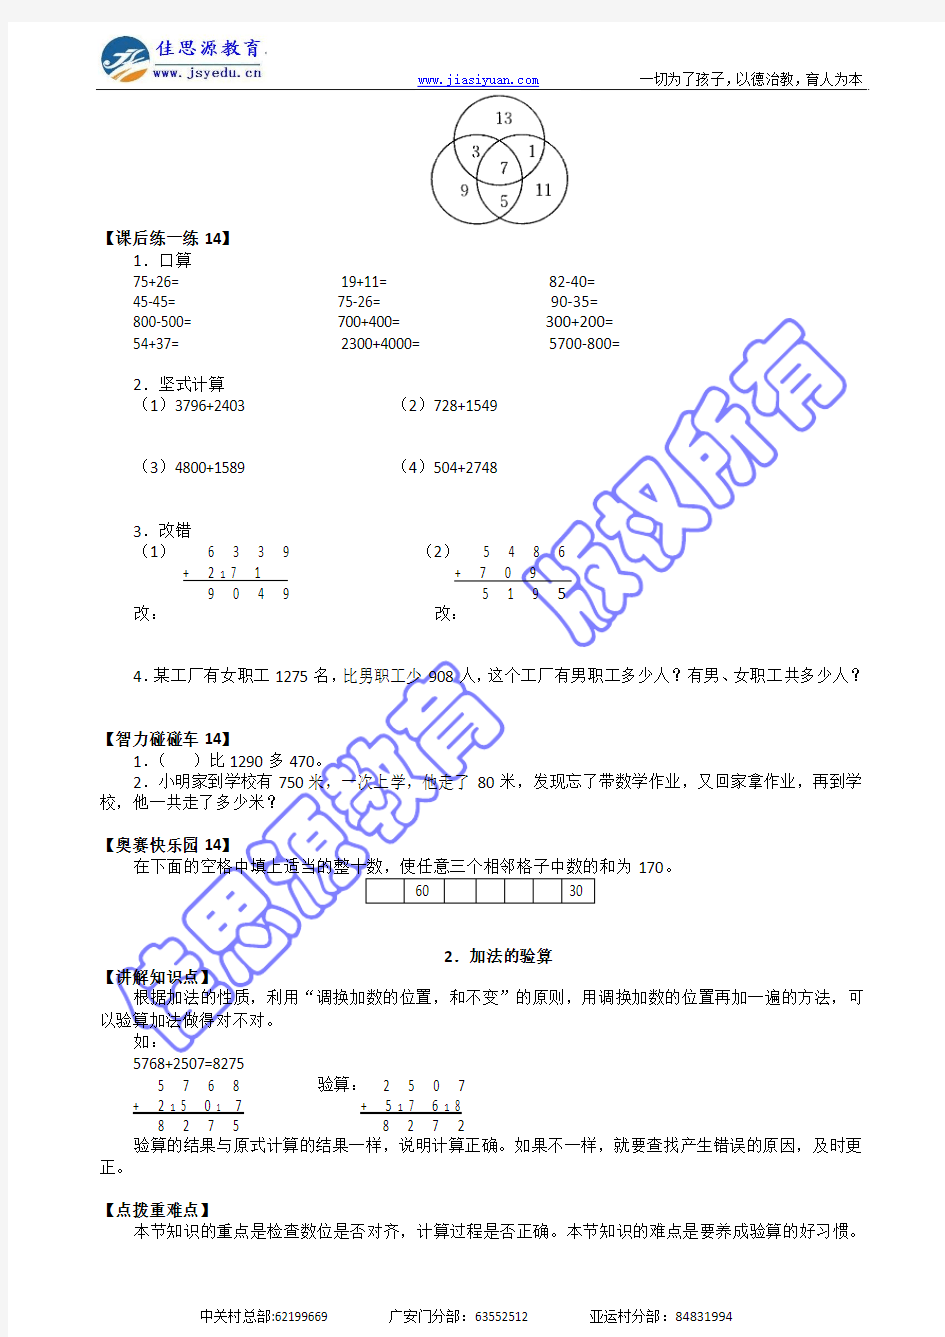 学科数学年级二年级版本北京版期数2343